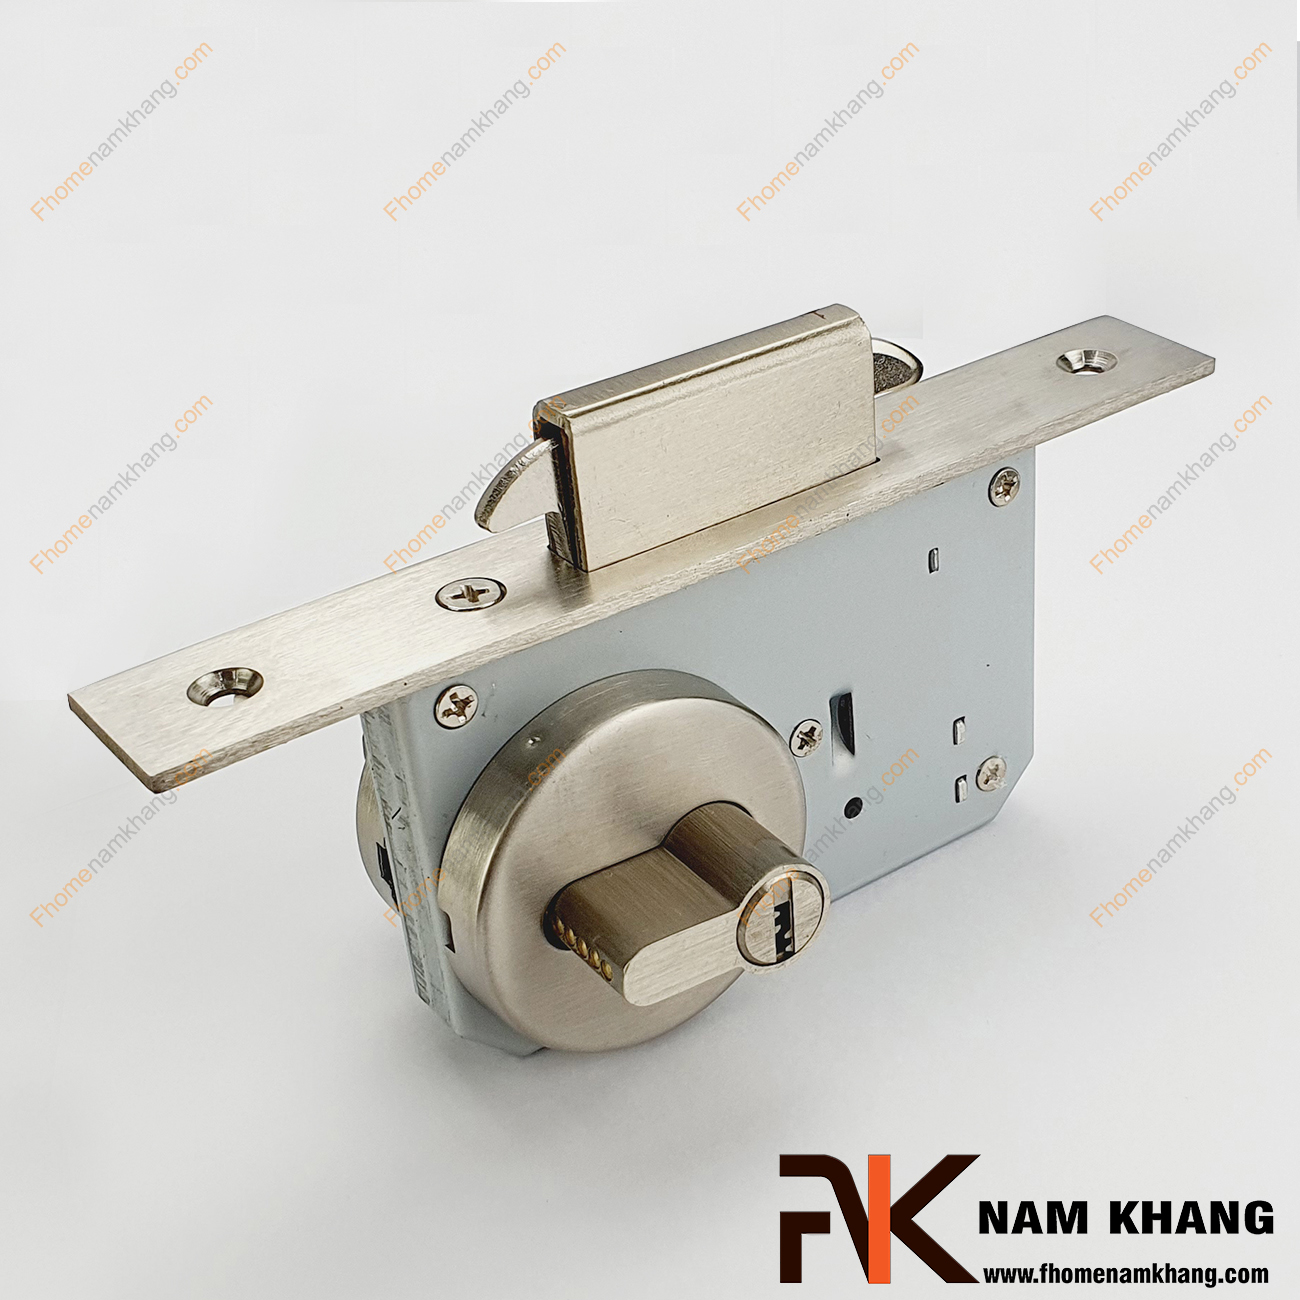 Khóa âm cửa lùa bằng inox cao cấp NK556-INOX là dòng khóa thông dụng và được ưa chuộng sử dụng tại thị trường Việt Nam.